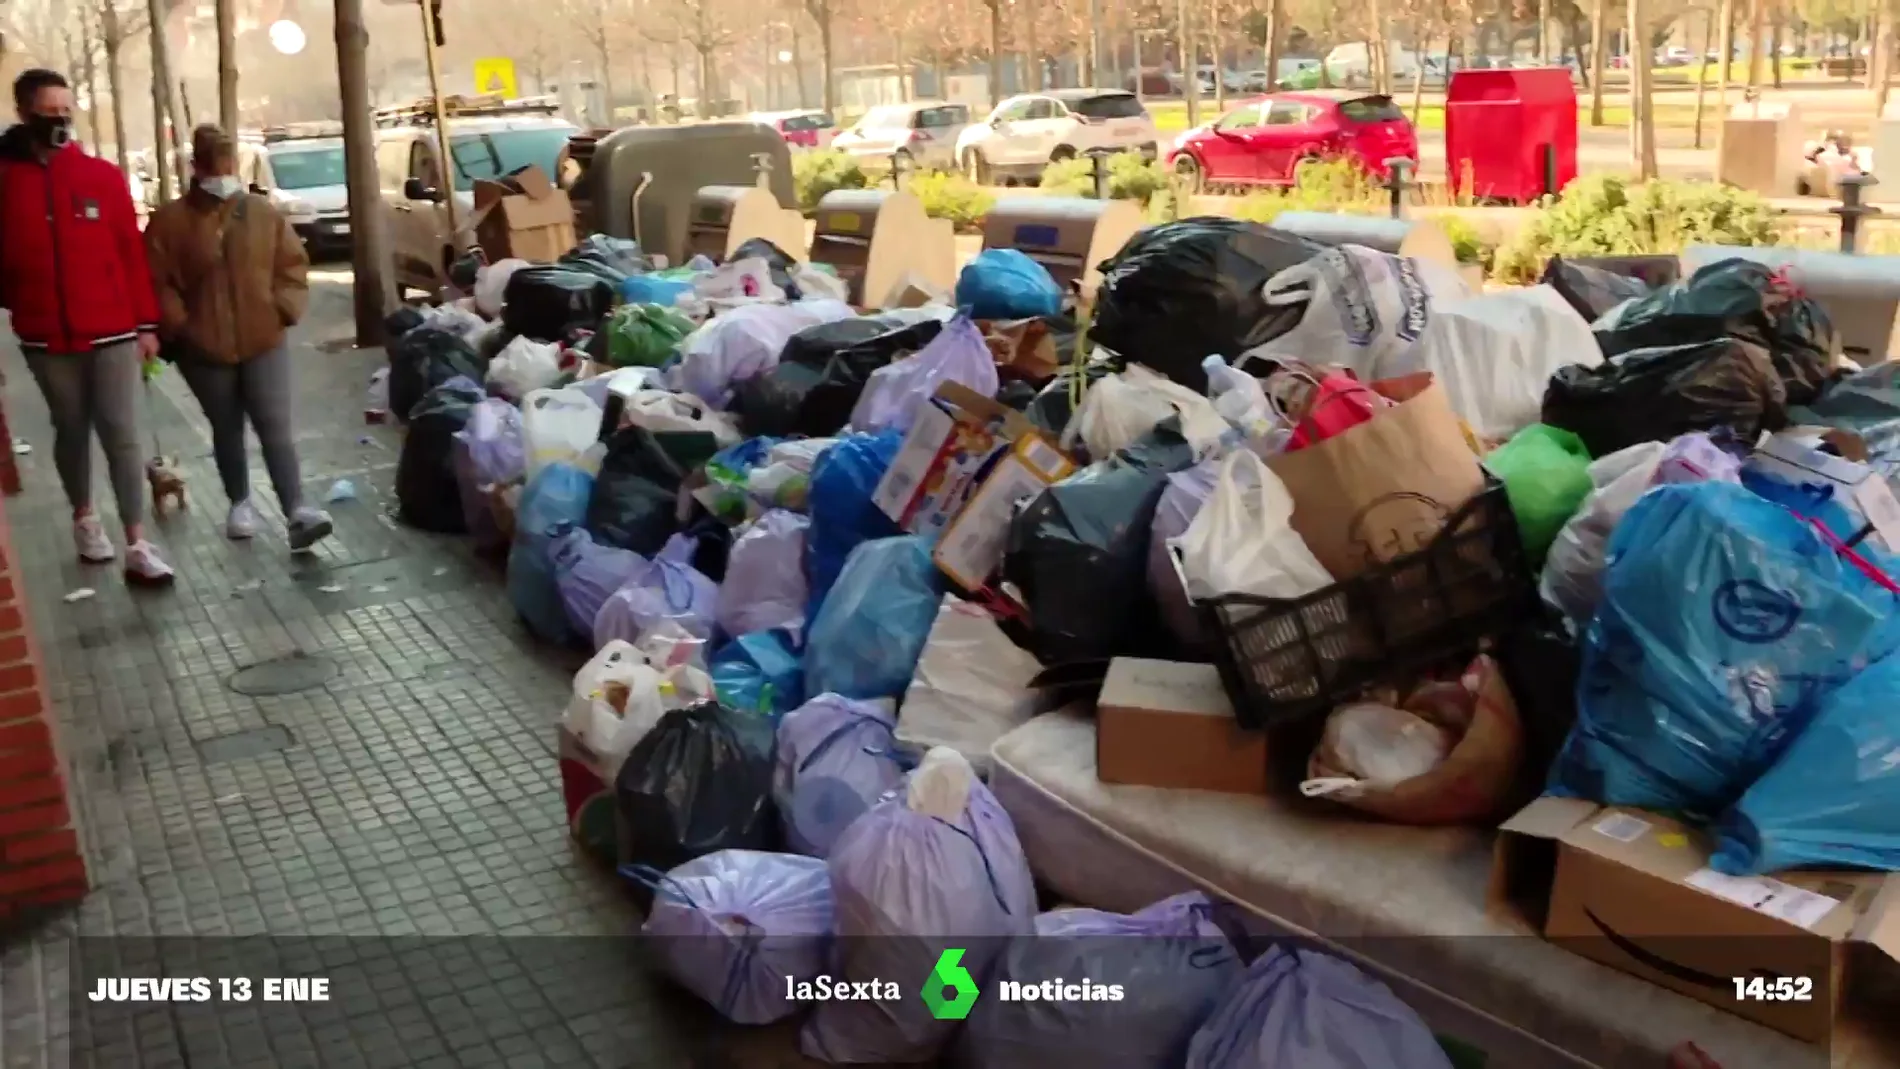 Montañas de basura desde Navidad: la huelga de limpieza en Salt satura la ciudad de desperdicios